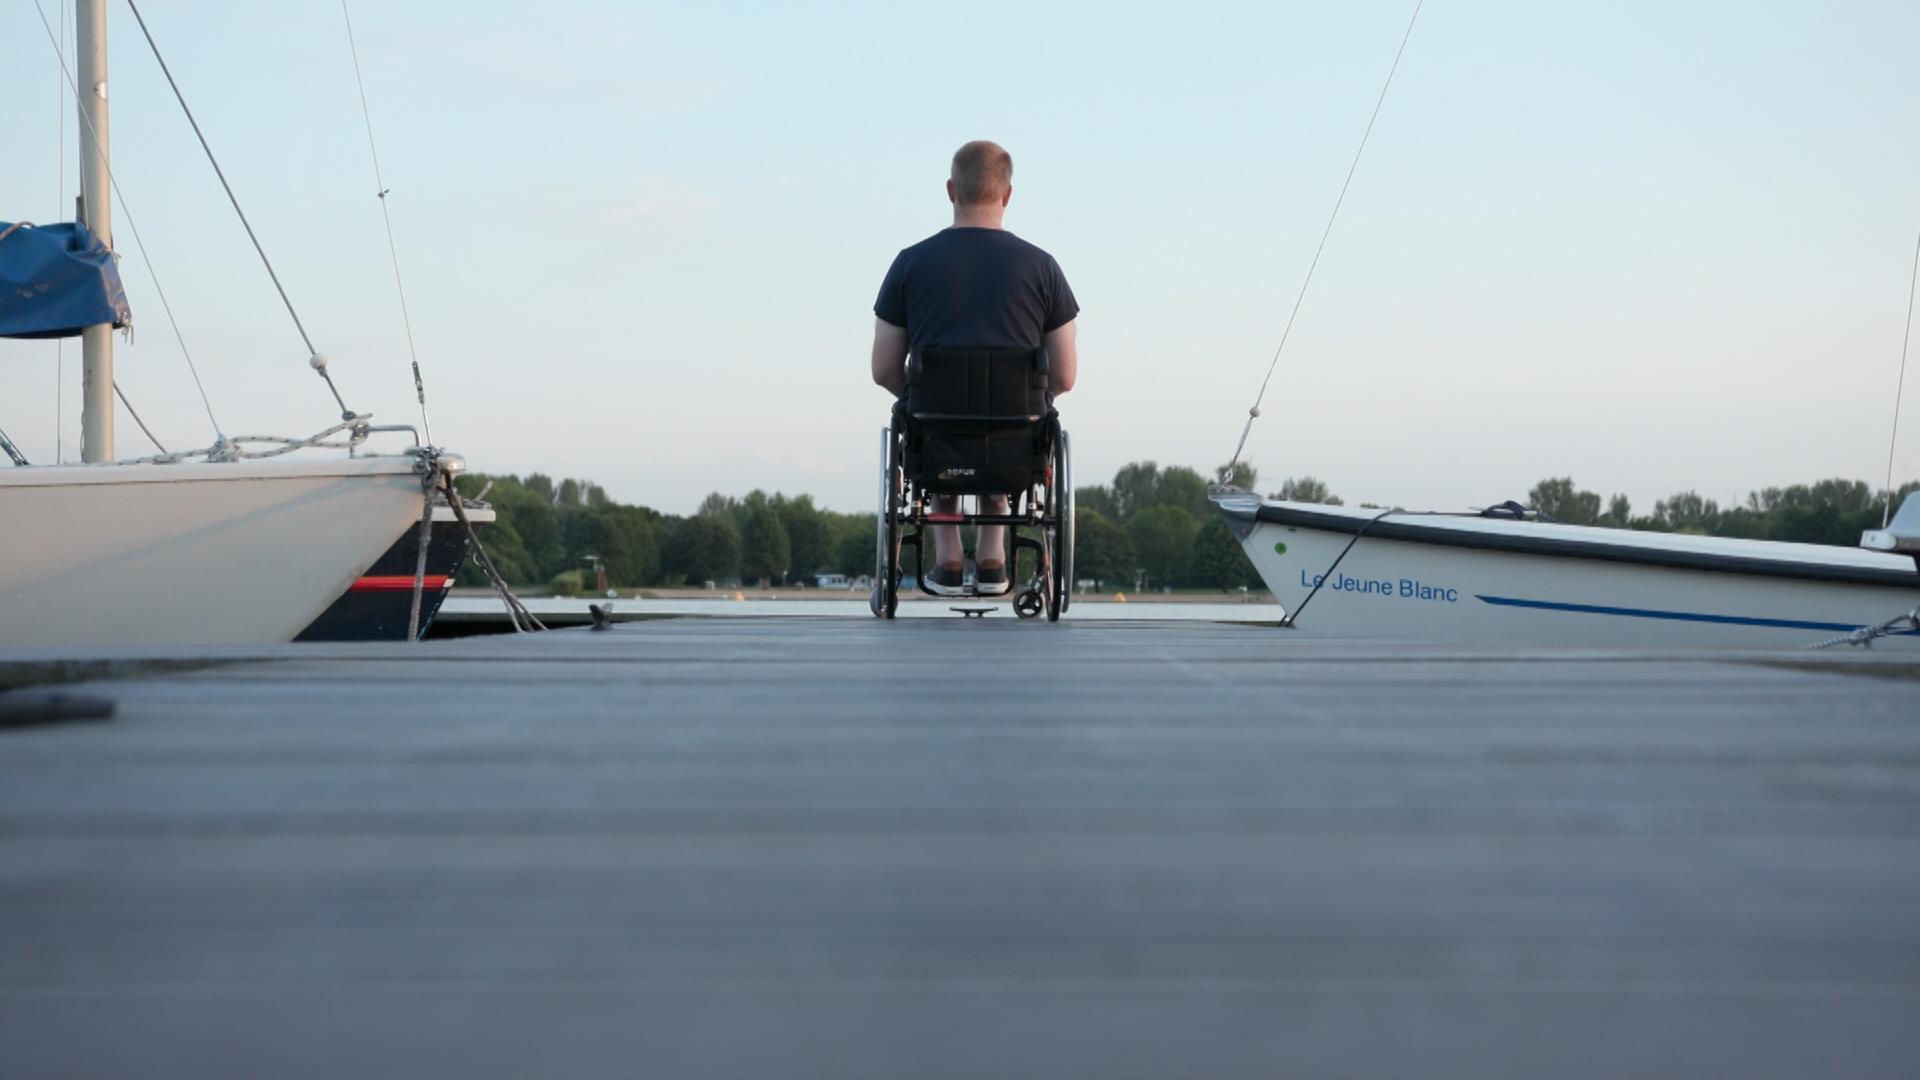 Seit seinem Schlaganfall sitzt Karsten Voß in einem Rollstuhl. Seine Geschichte nutzt er, um andere Menschen zu motivieren, nicht aufzugeben.